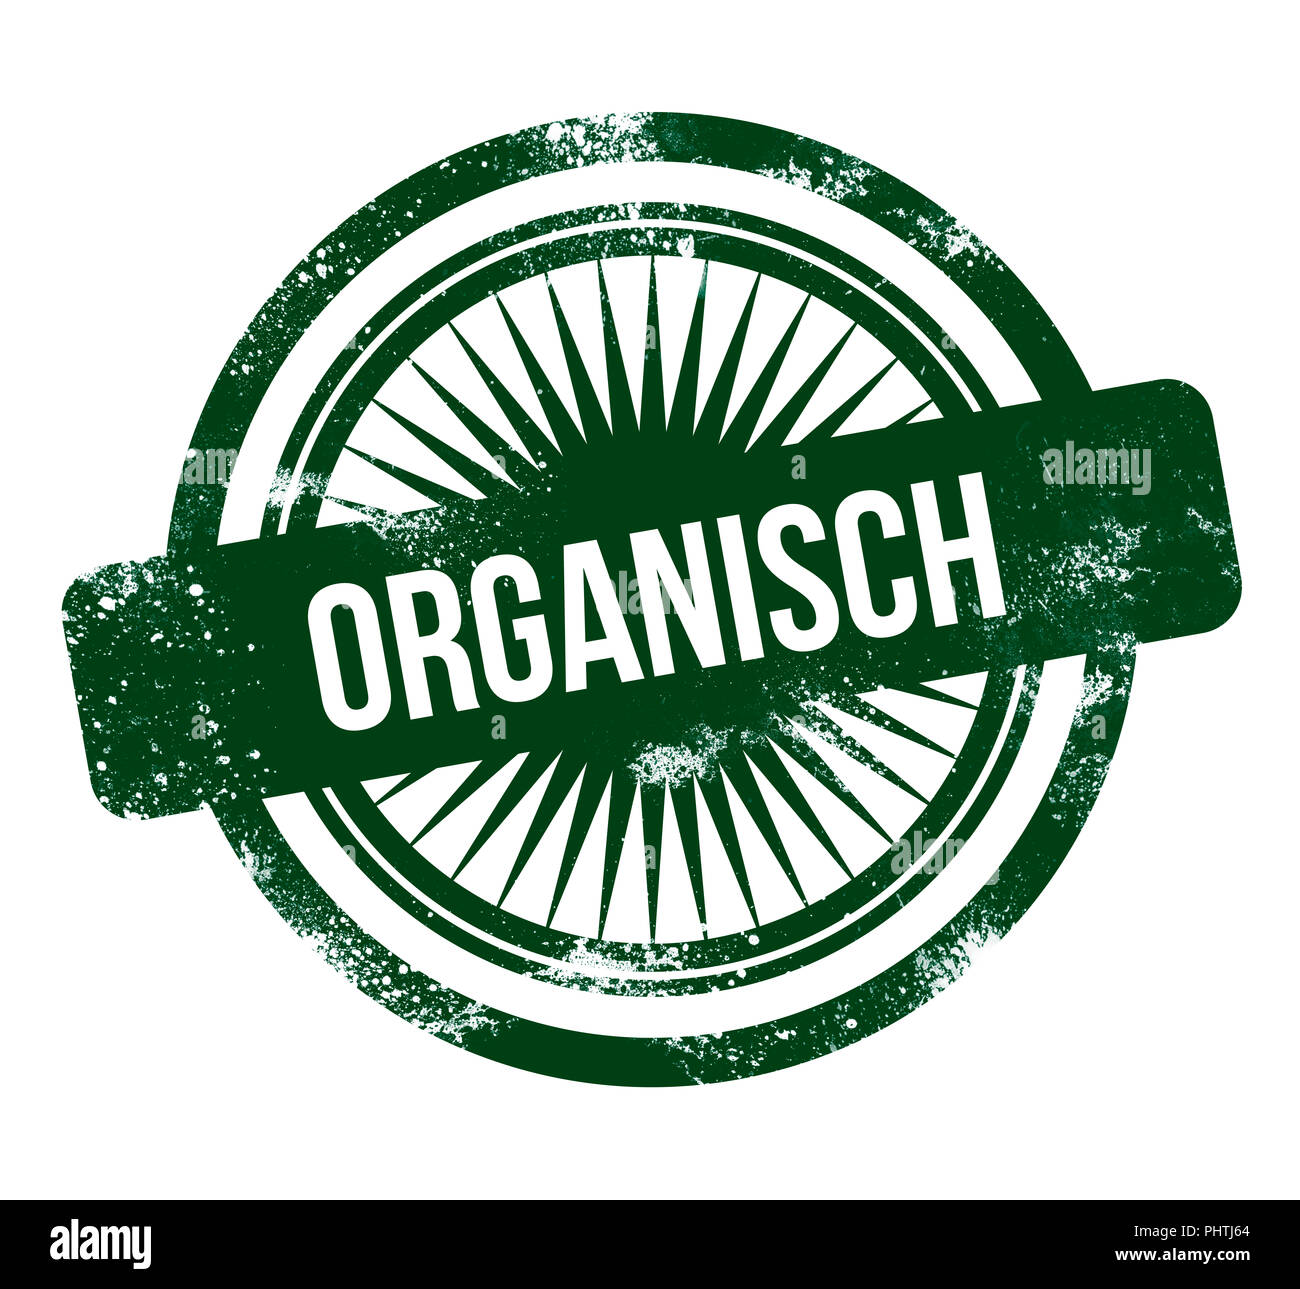 Organisch - green grunge stamp Stock Photo